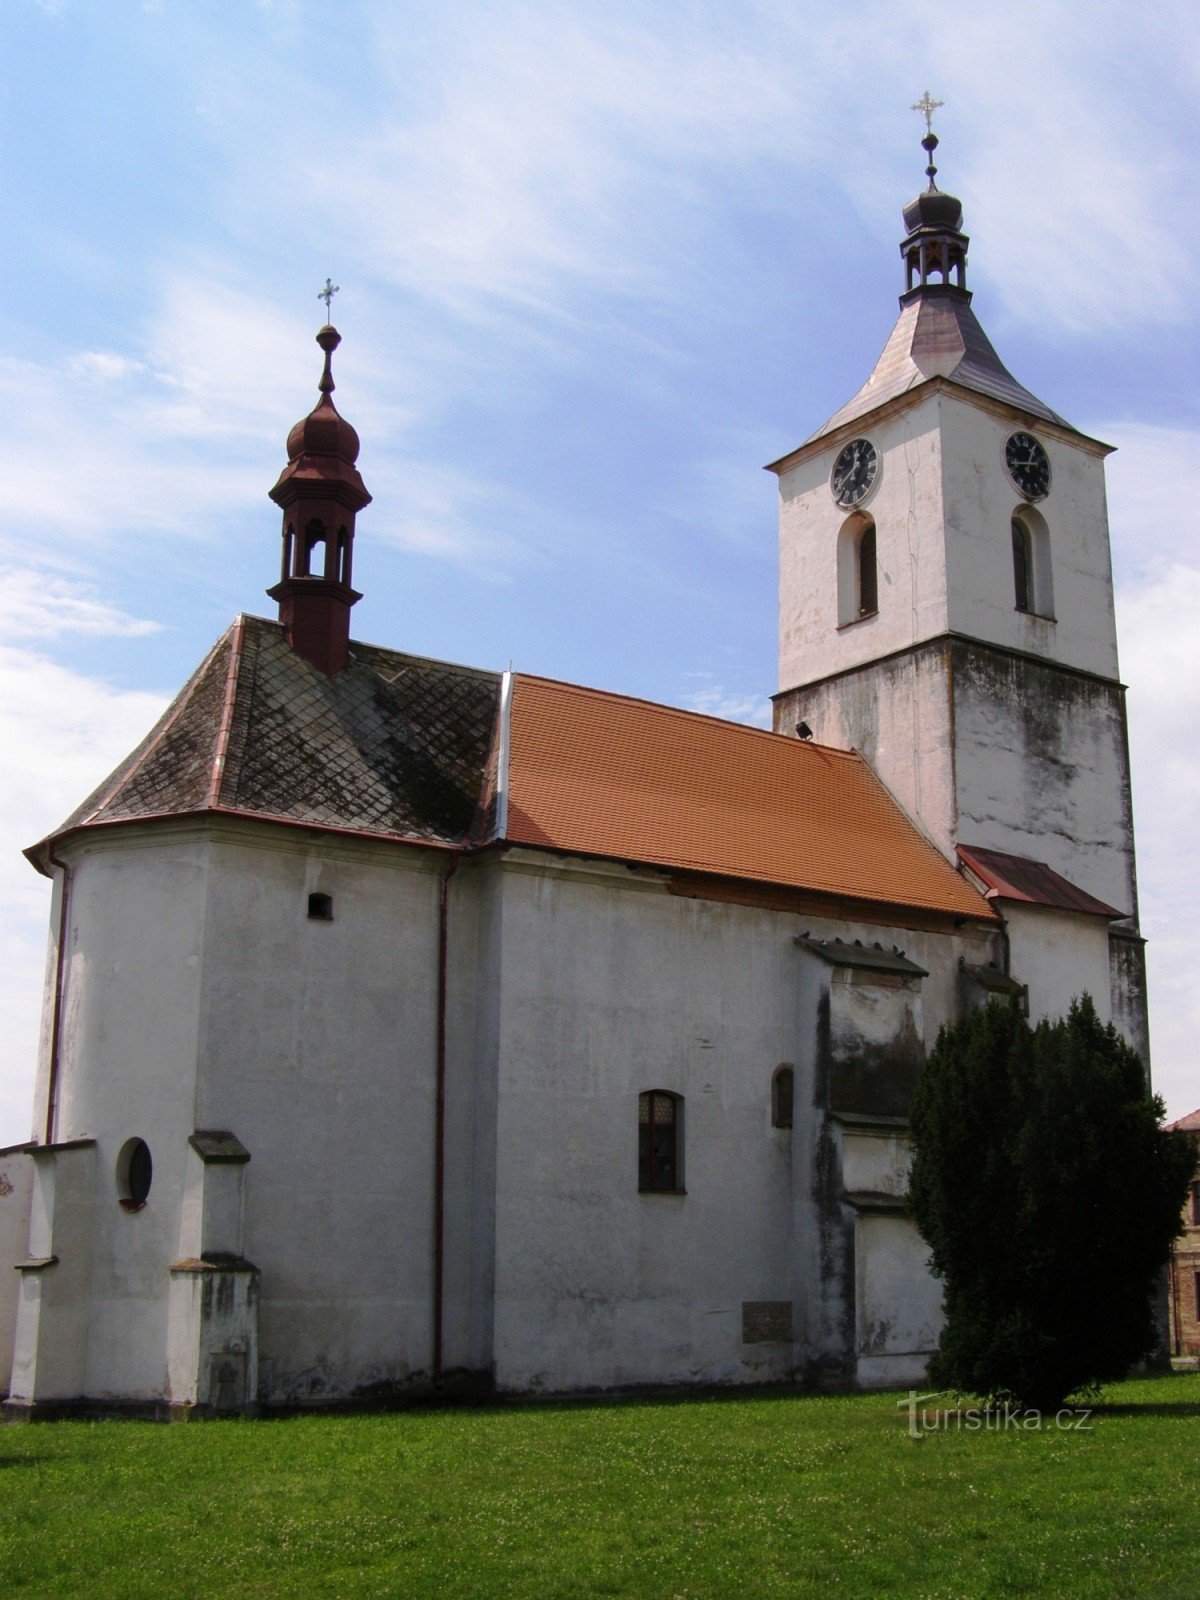 Starý Bydžov - kyrkan St. Procopius